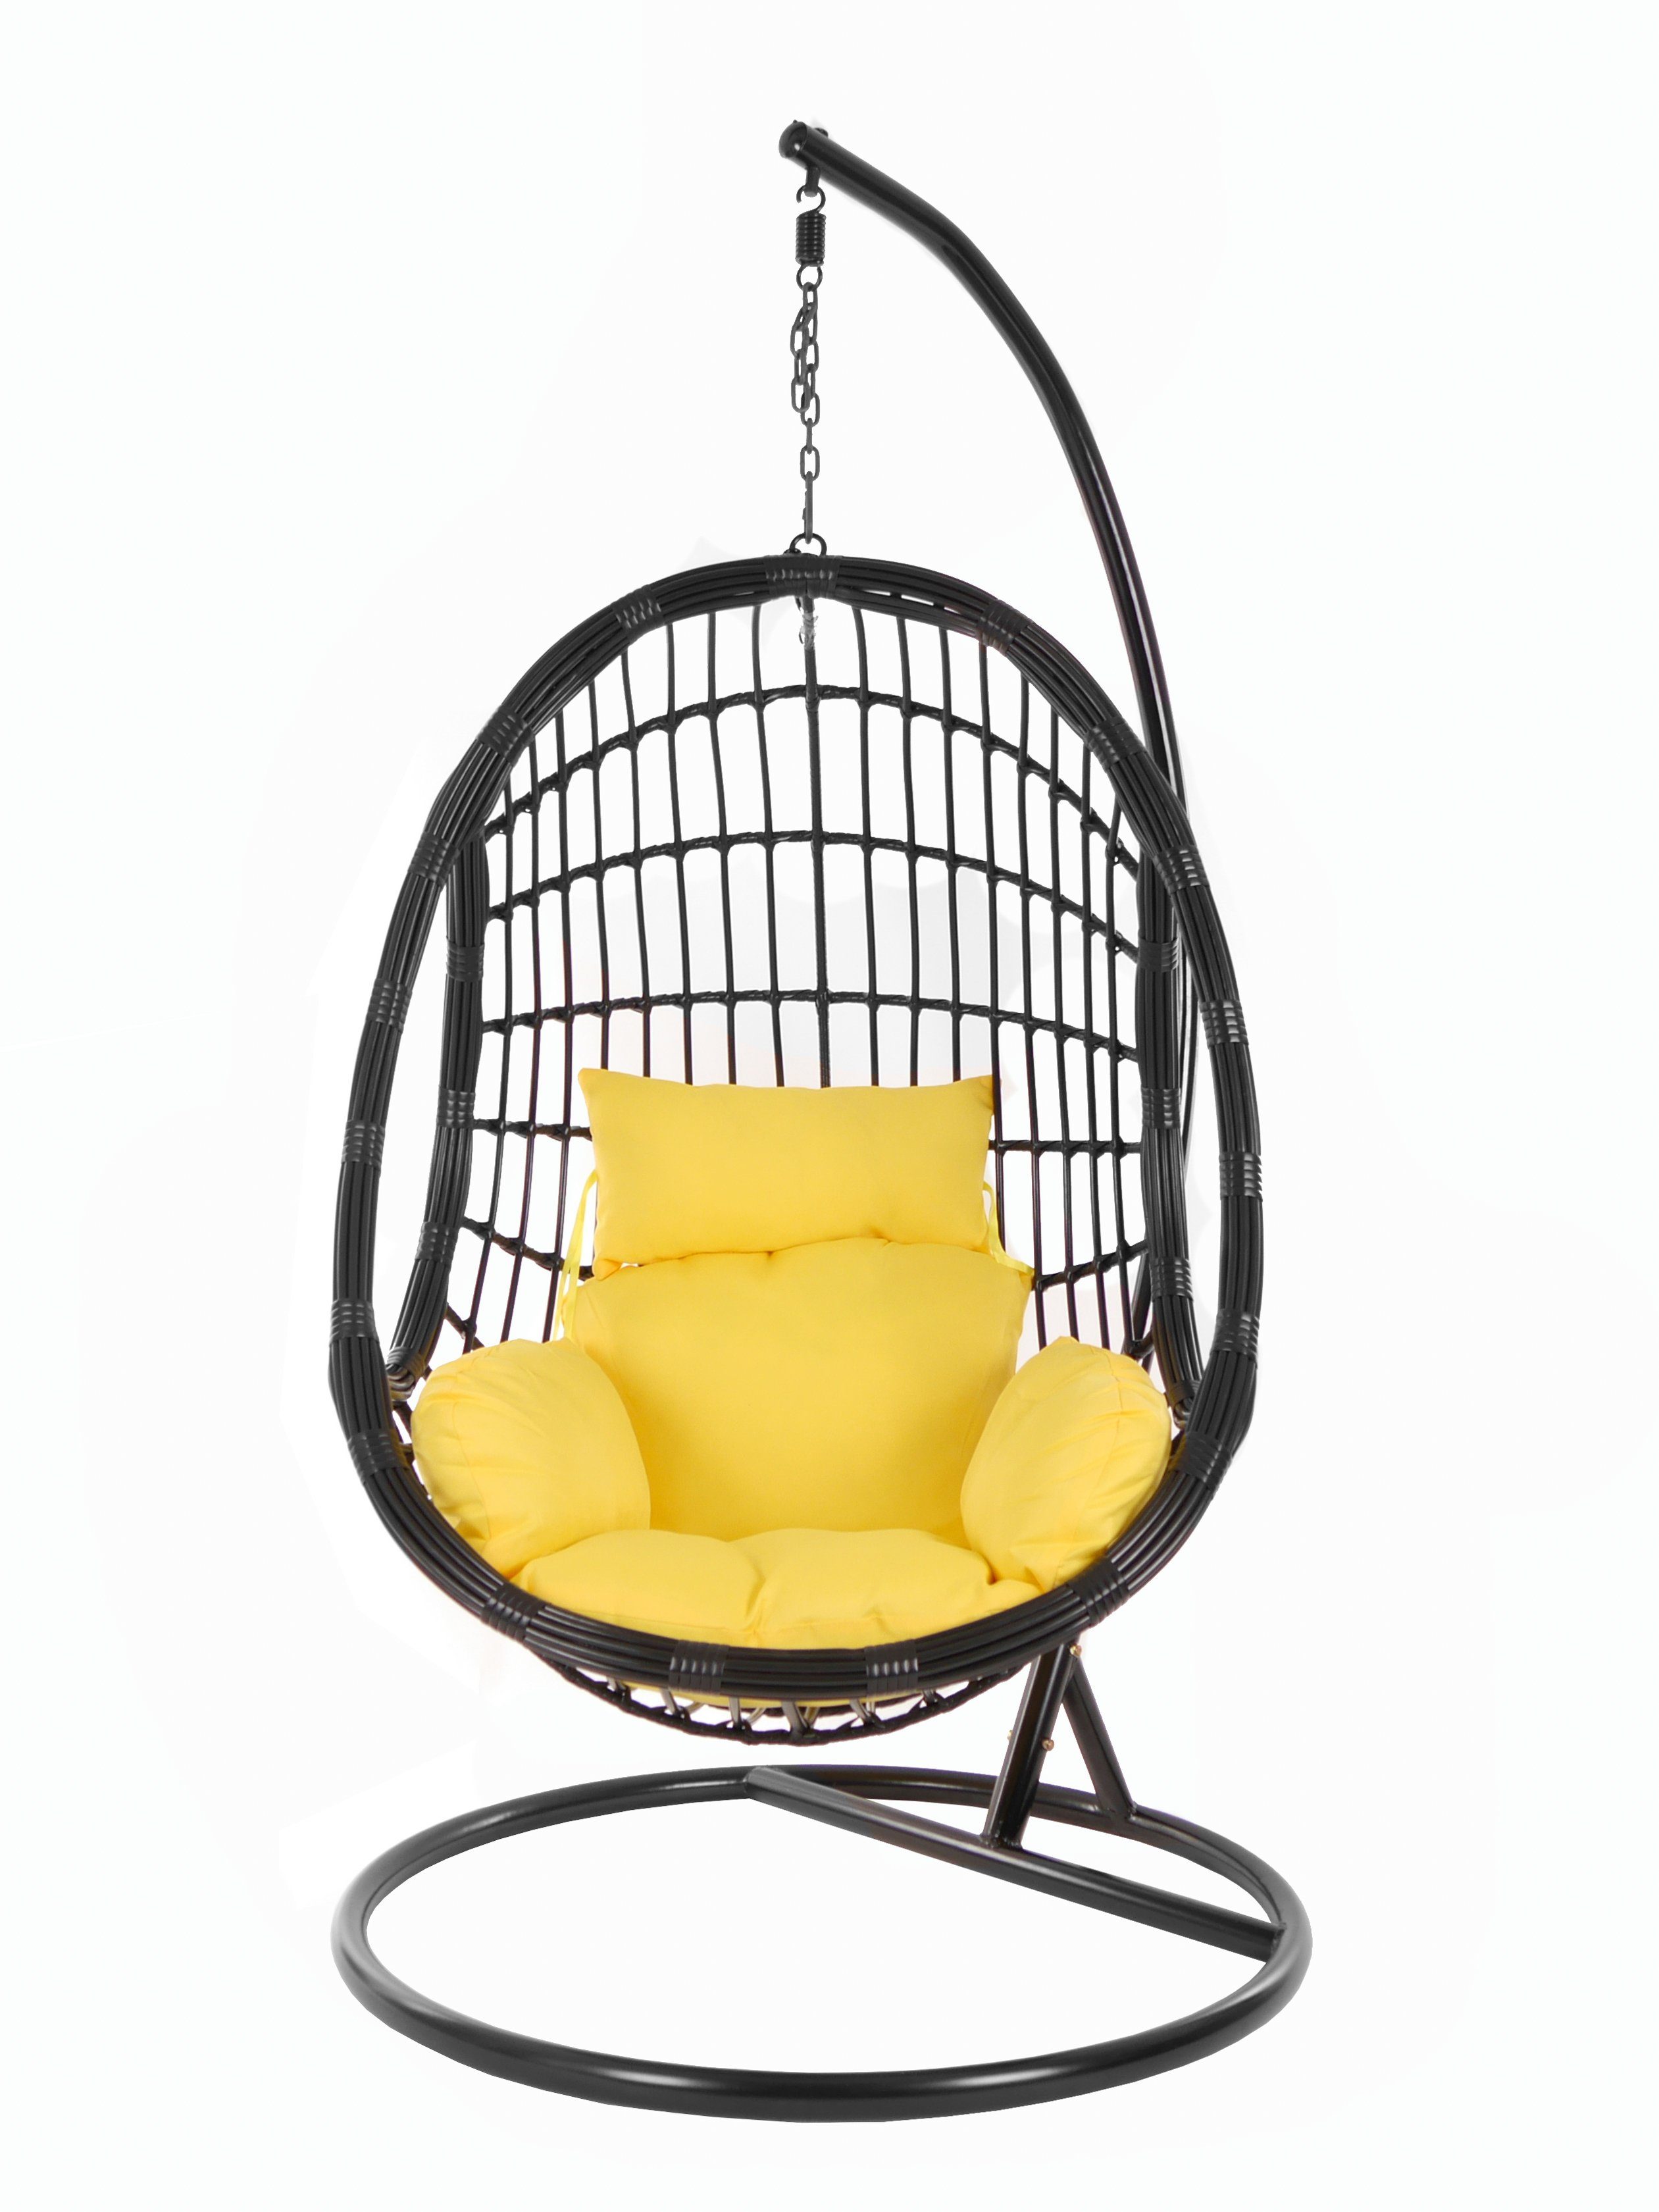 KIDEO Hängesessel PALMANOVA Swing Gestell Chair, Nest-Kissen pineapple) black, (2200 Kissen, Hängesessel gelb Schwebesessel, und mit